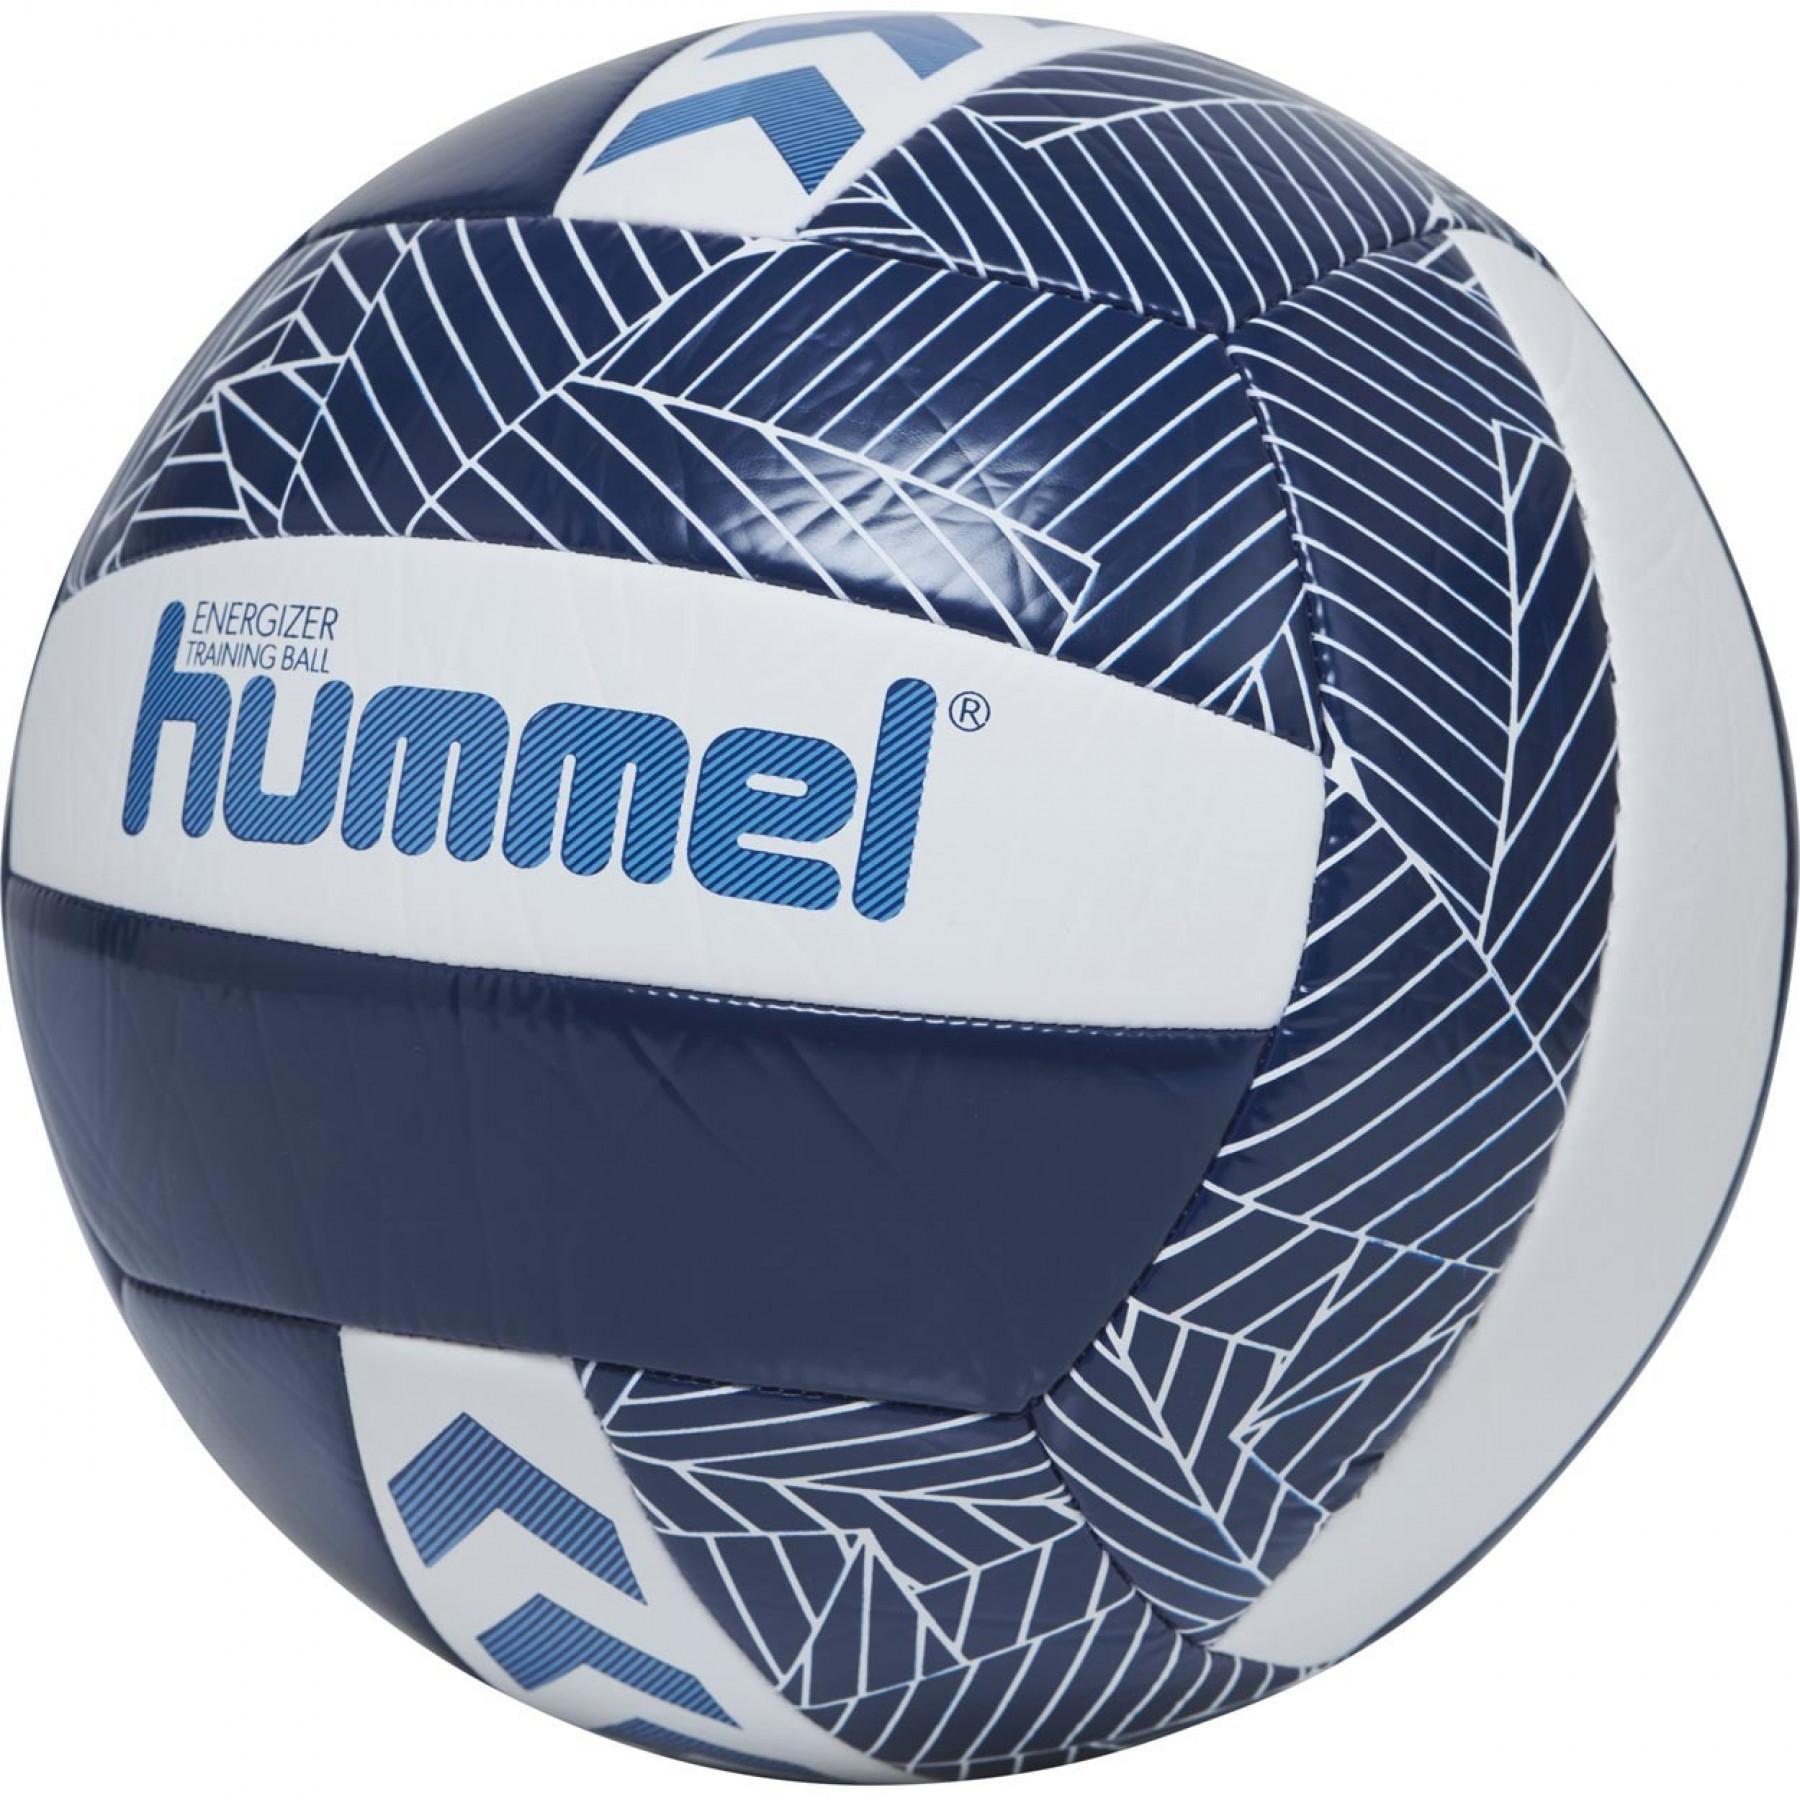 Lot de 10 Ballons Volley-ball Hummel Energizer [Taille  5]